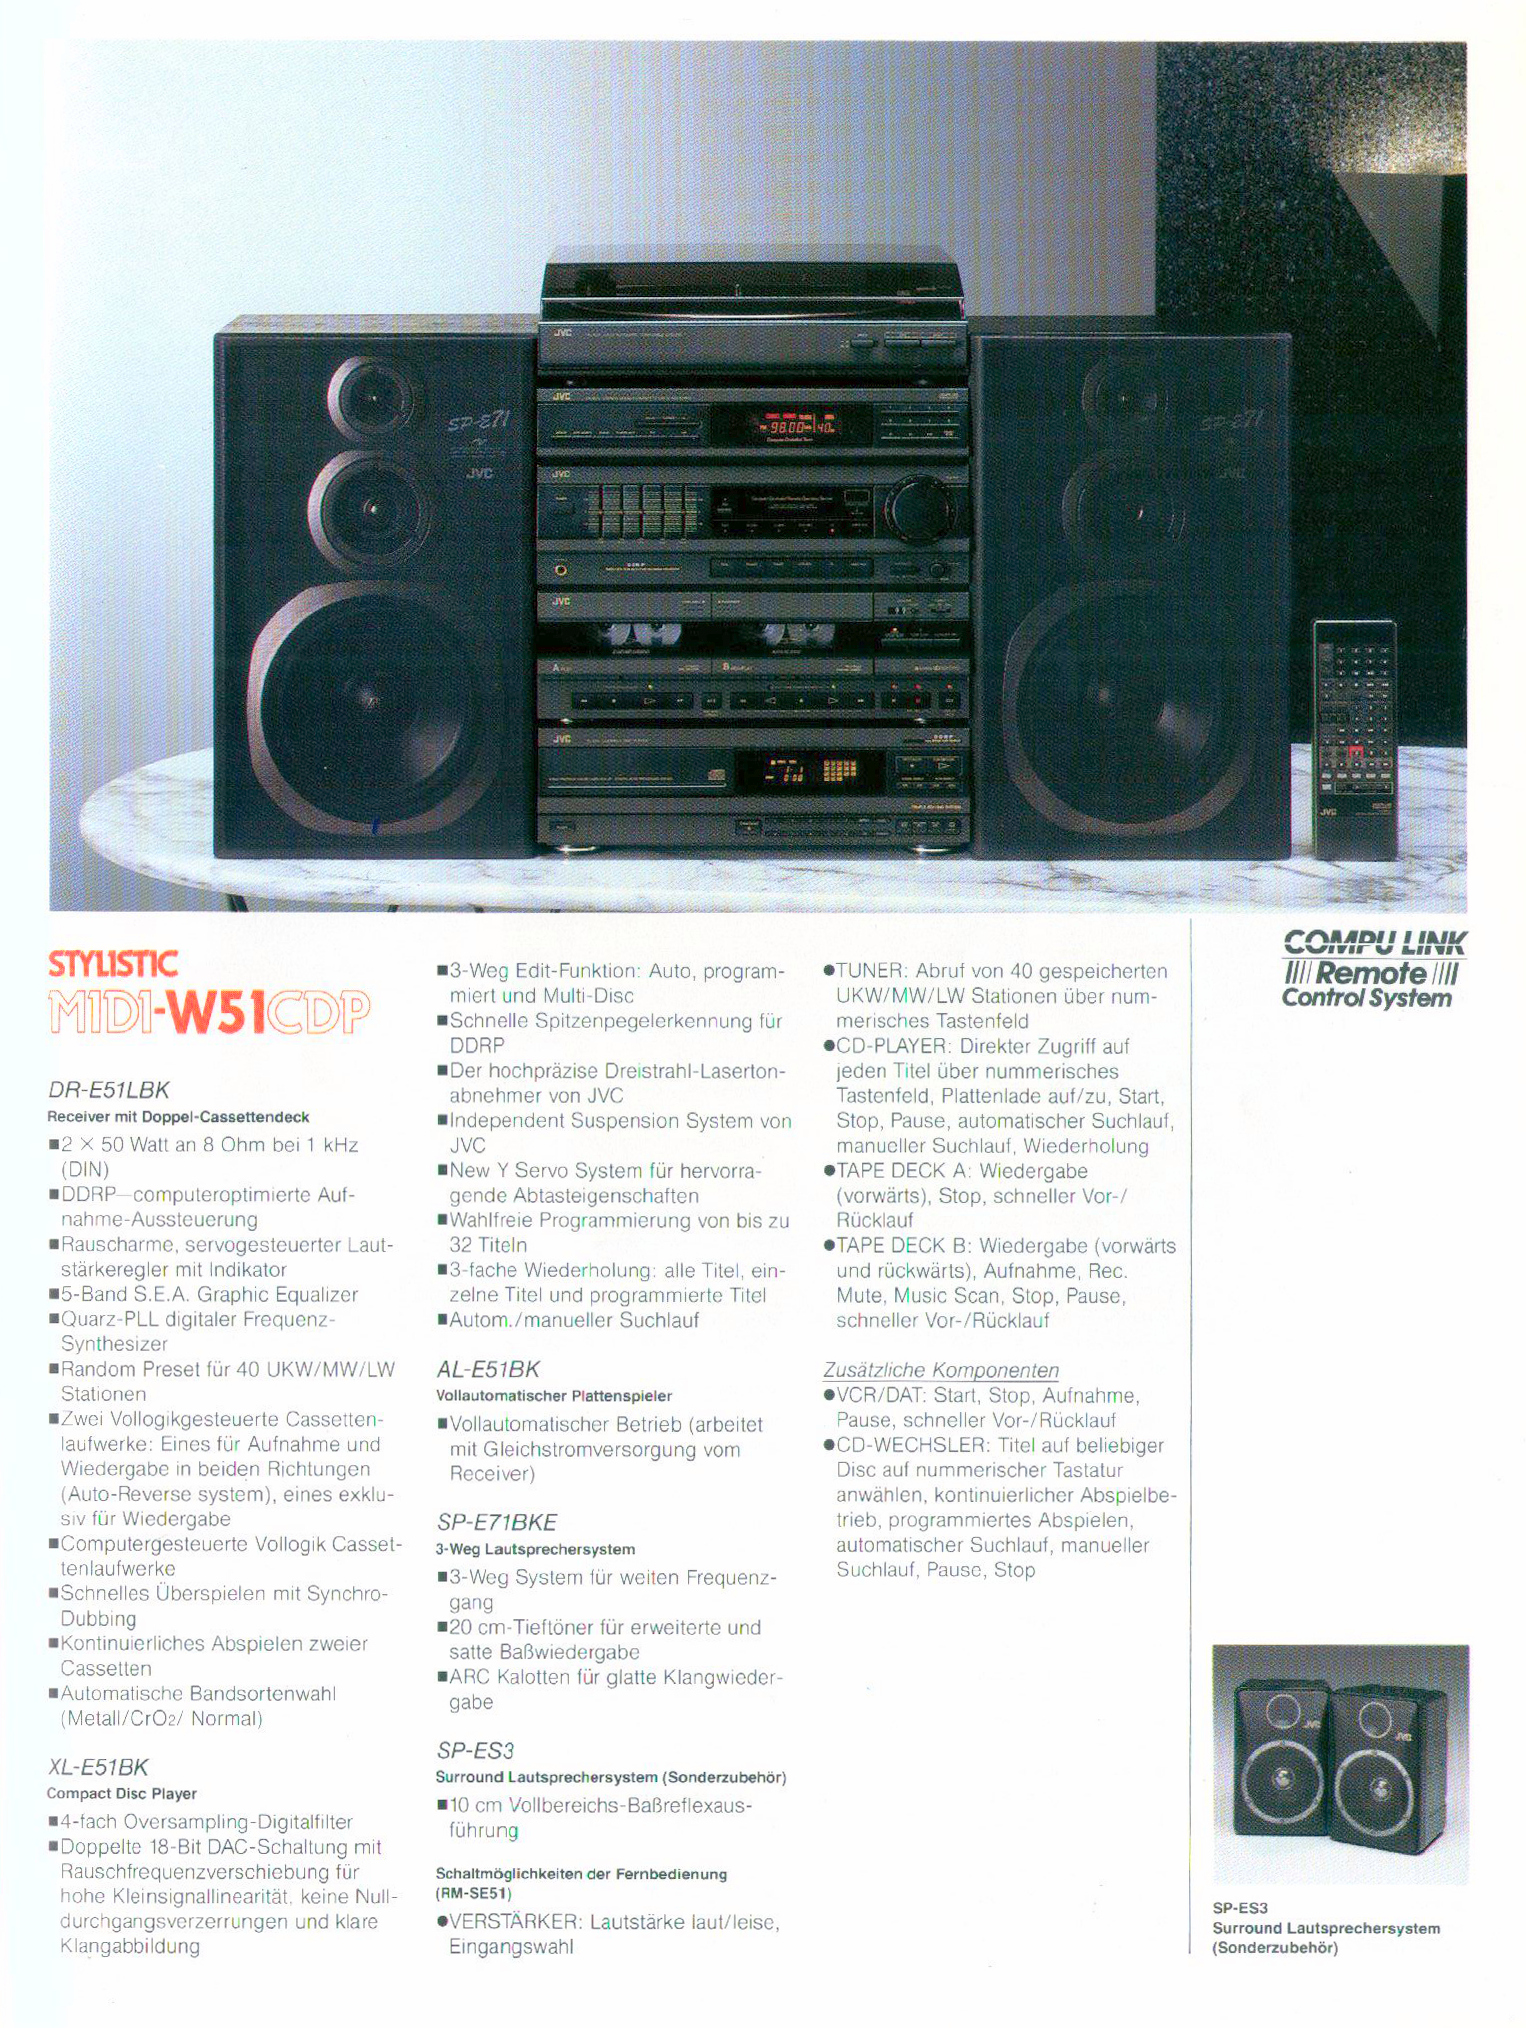 JVC Midi W-51 CD-Prospekt-1989.jpg